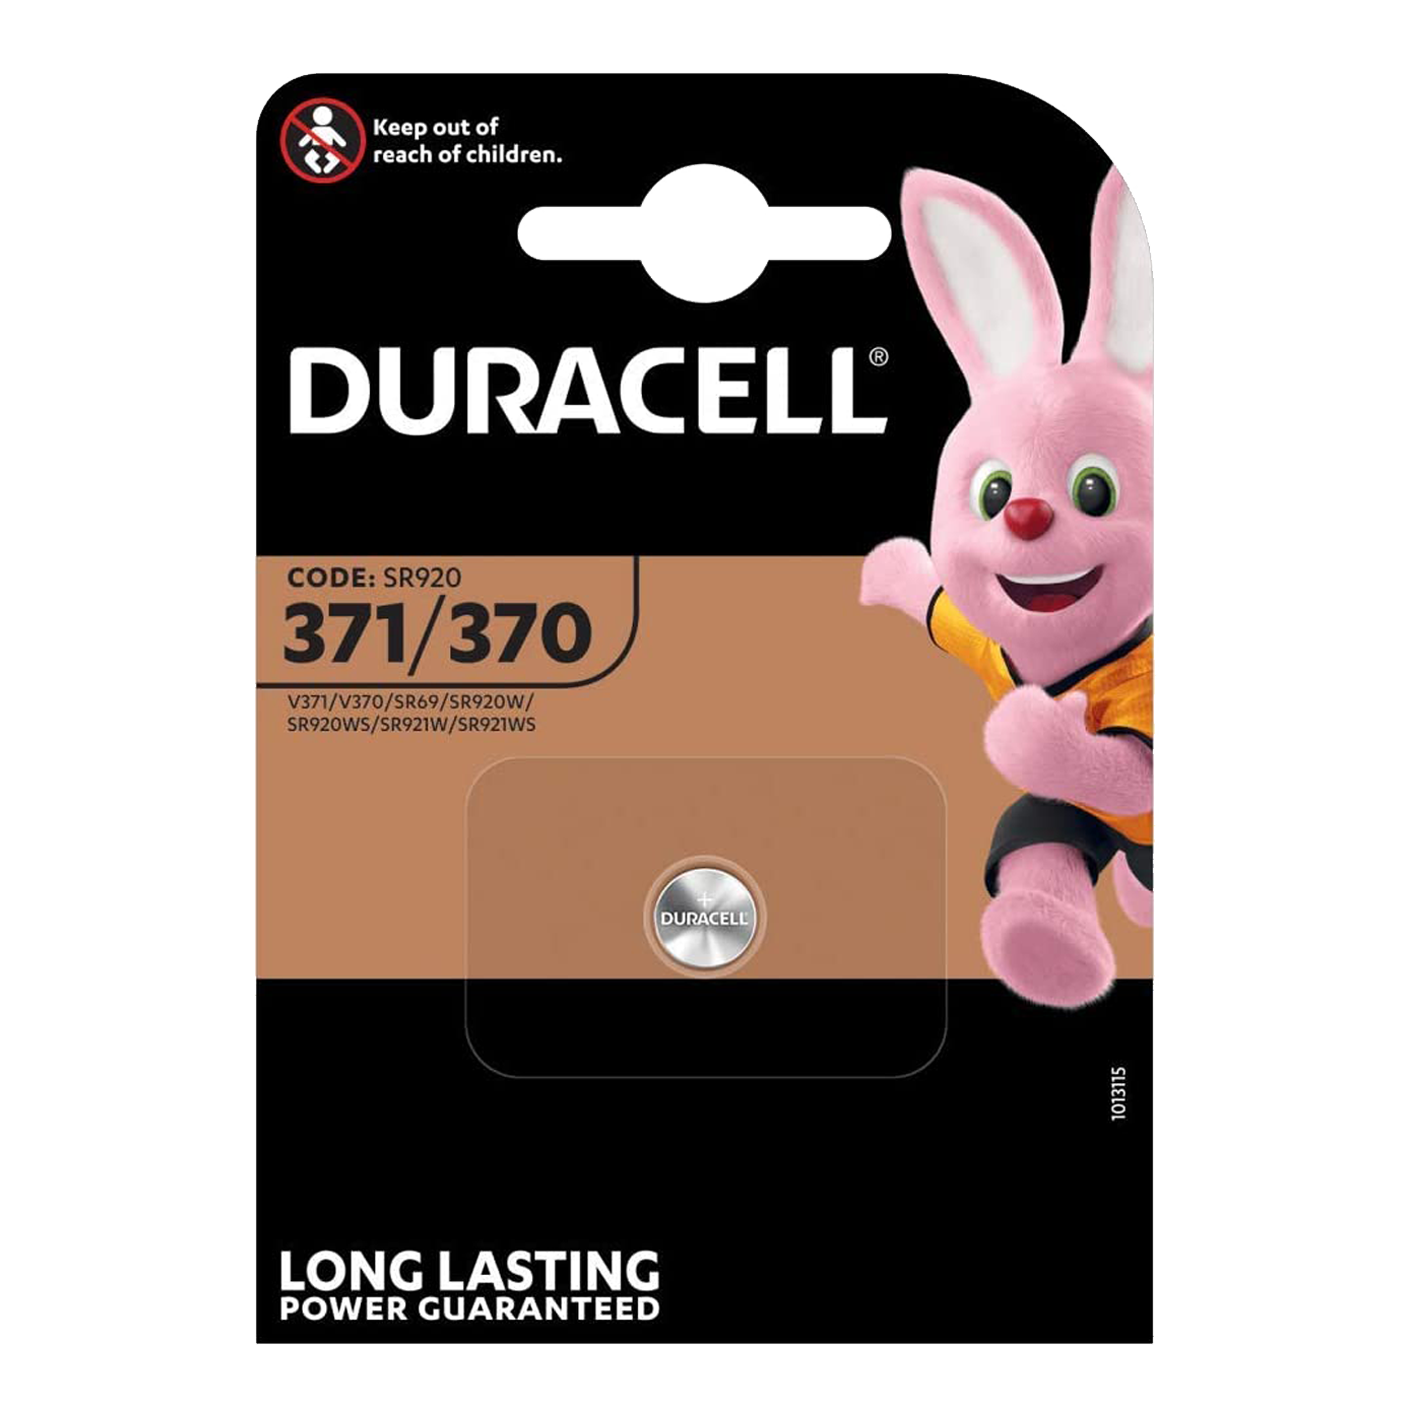 Duracell 371/370 1,5 V óxido de plata, paquete de 1